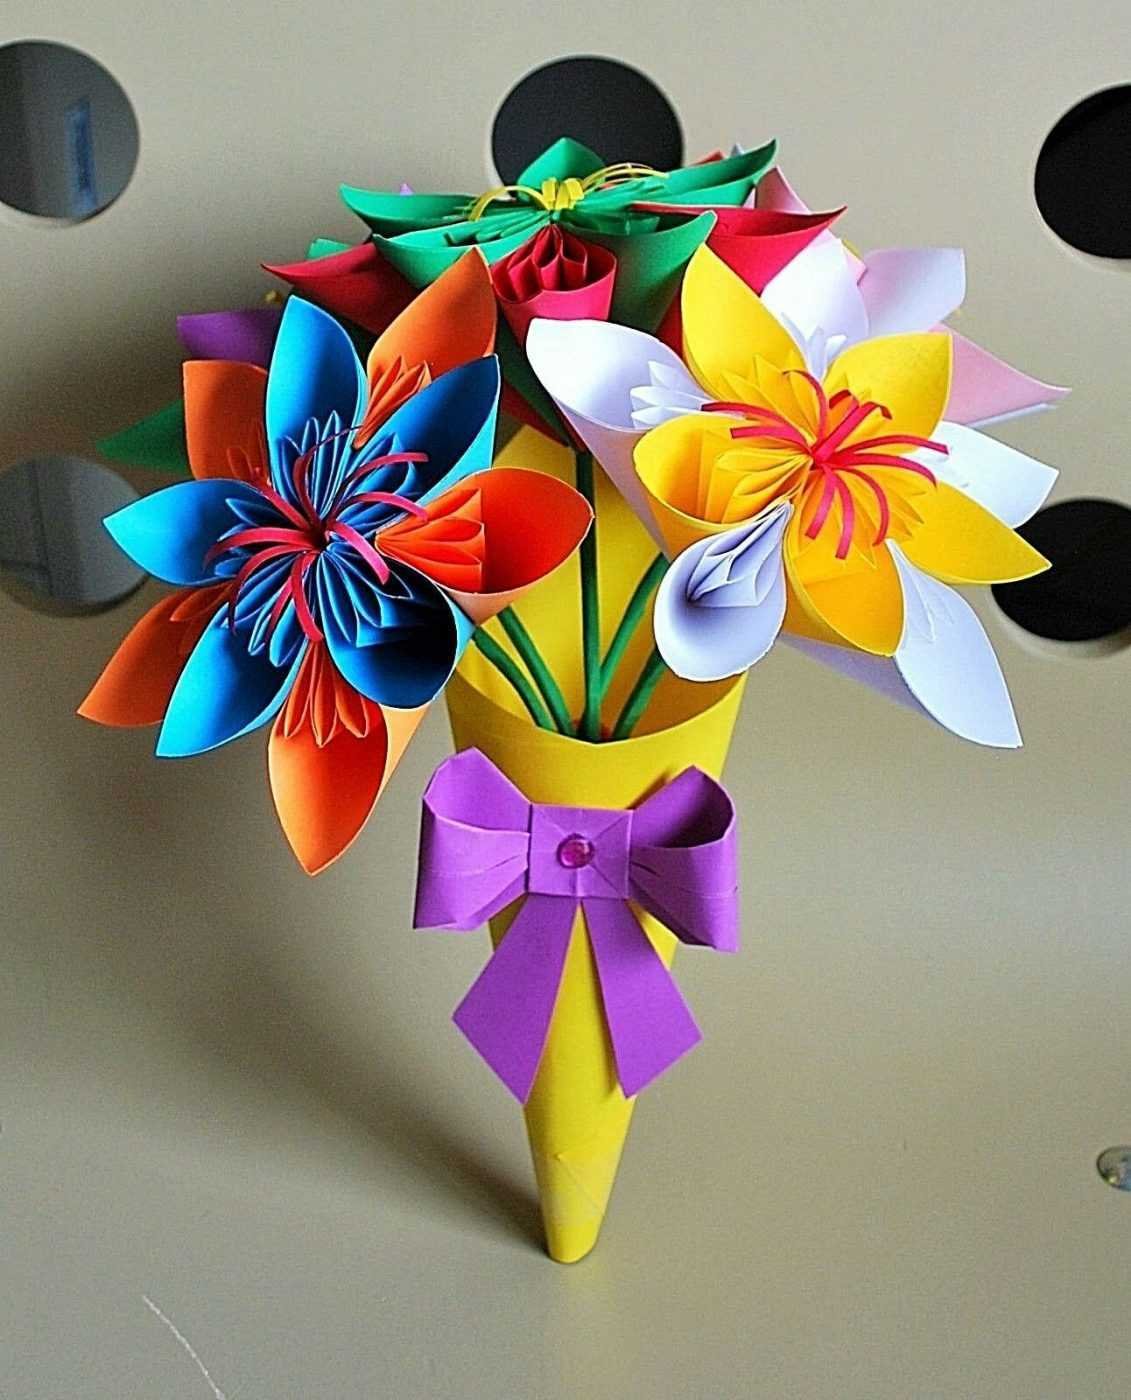 Поделка цветы. Бумажный букет цветов. Объемная однерка из бумаги. Букет оригами. Поделки из бумаги своими руками для школы